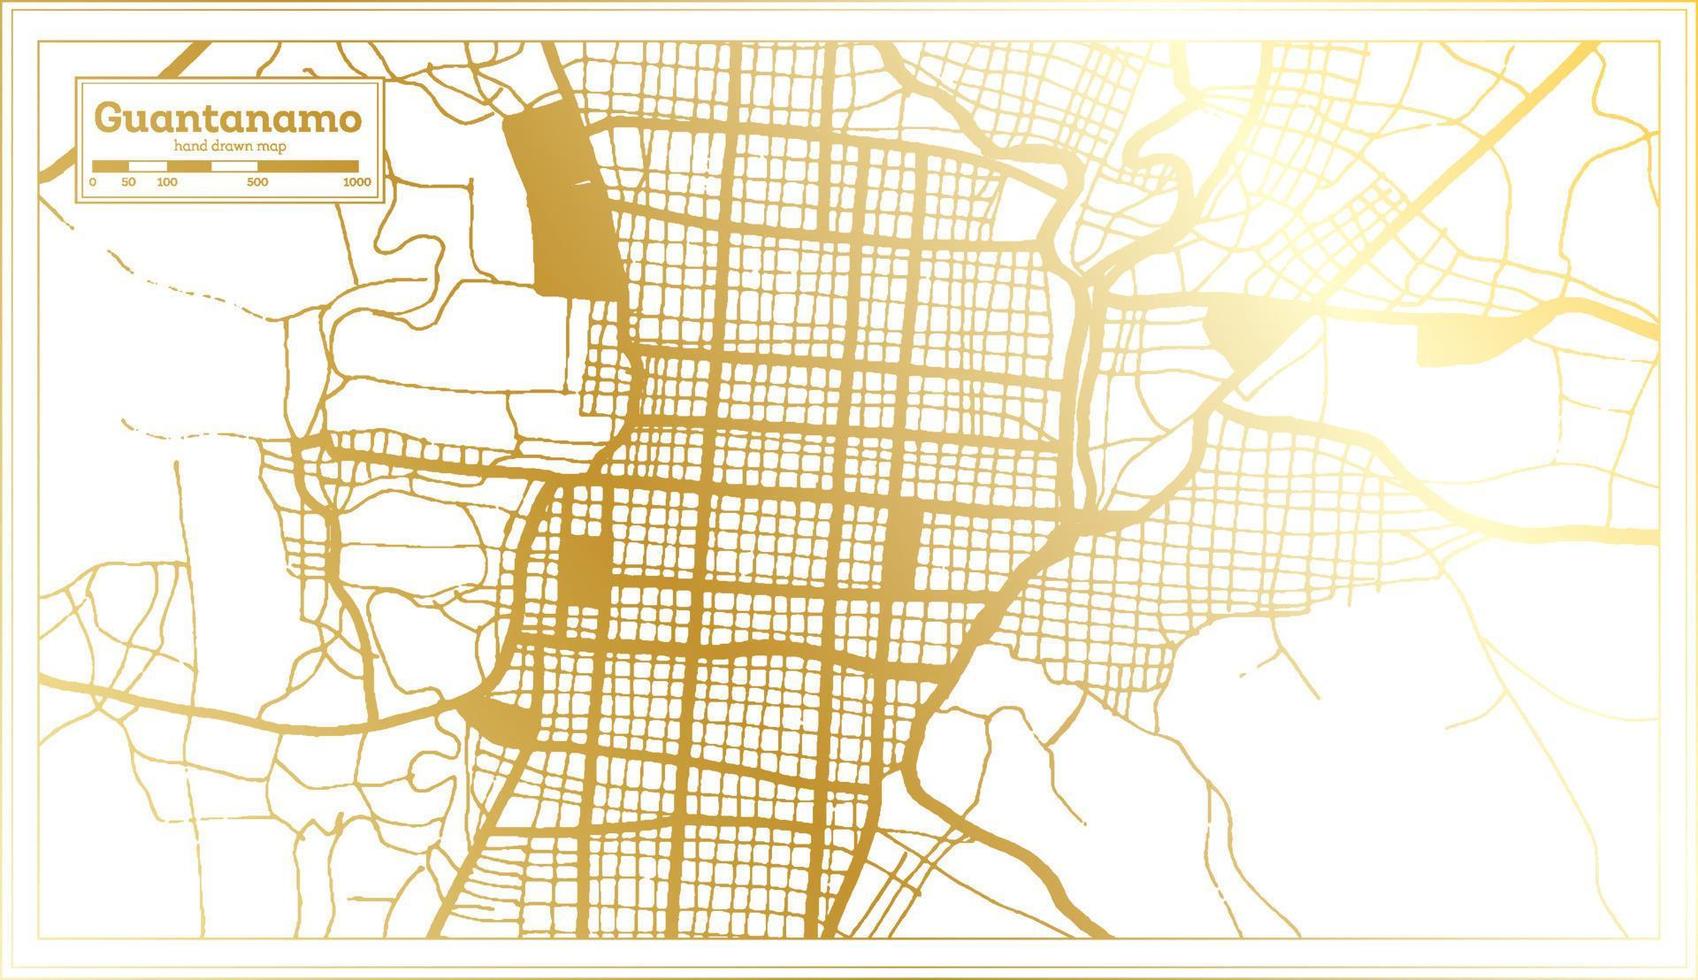 plan de la ville de guantanamo cuba dans un style rétro de couleur dorée. carte muette. vecteur